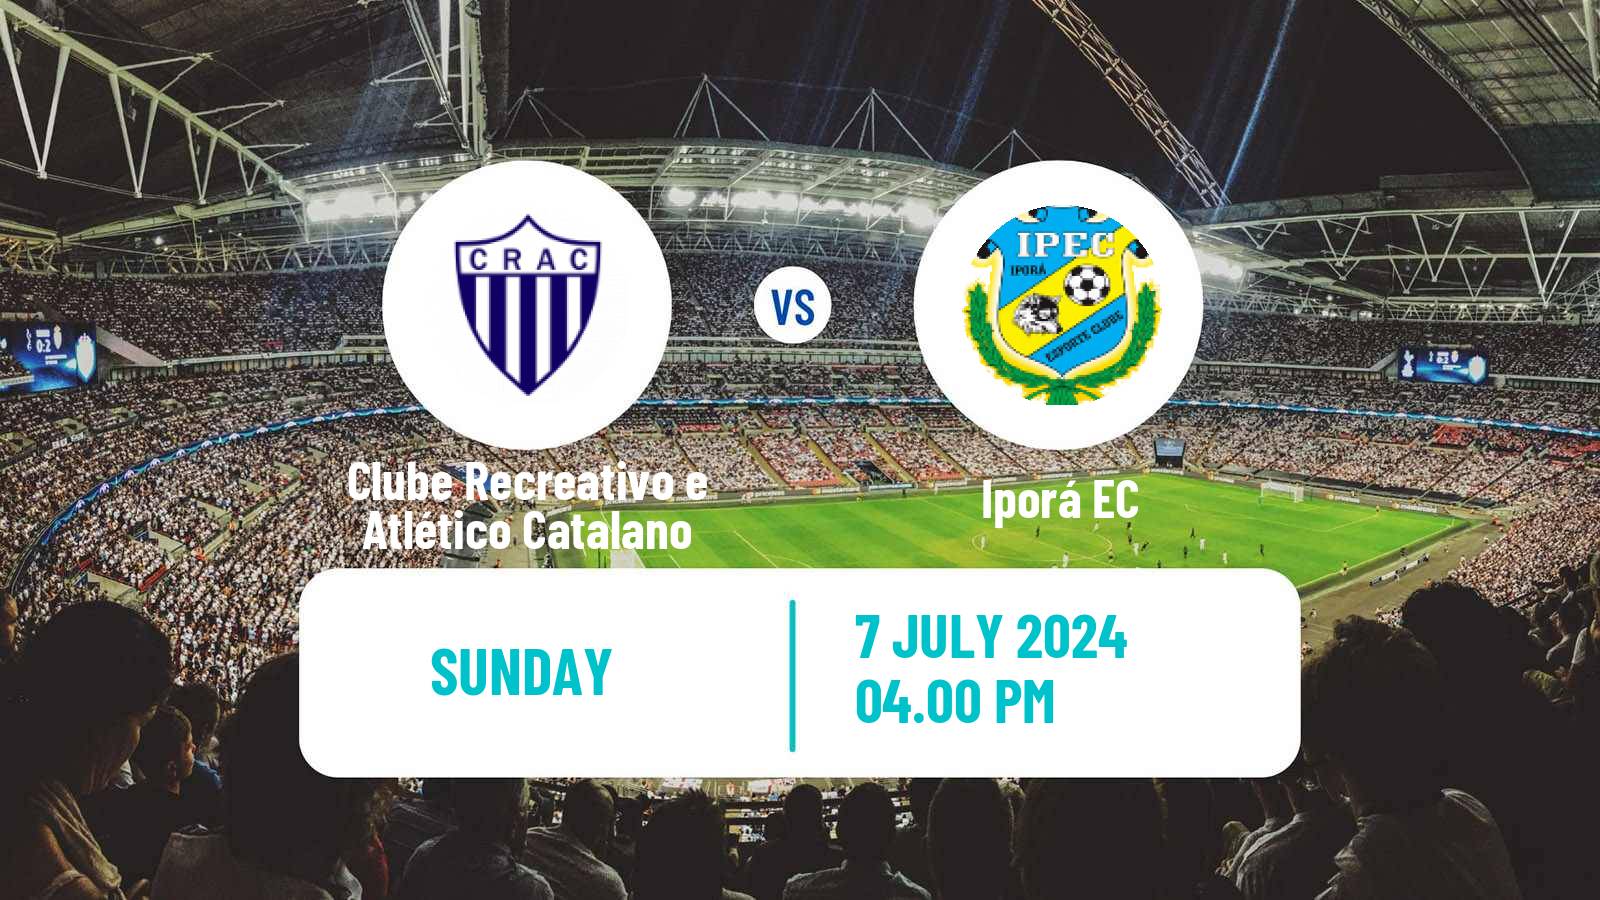 Soccer Brazilian Serie D Clube Recreativo e Atlético Catalano - Iporá